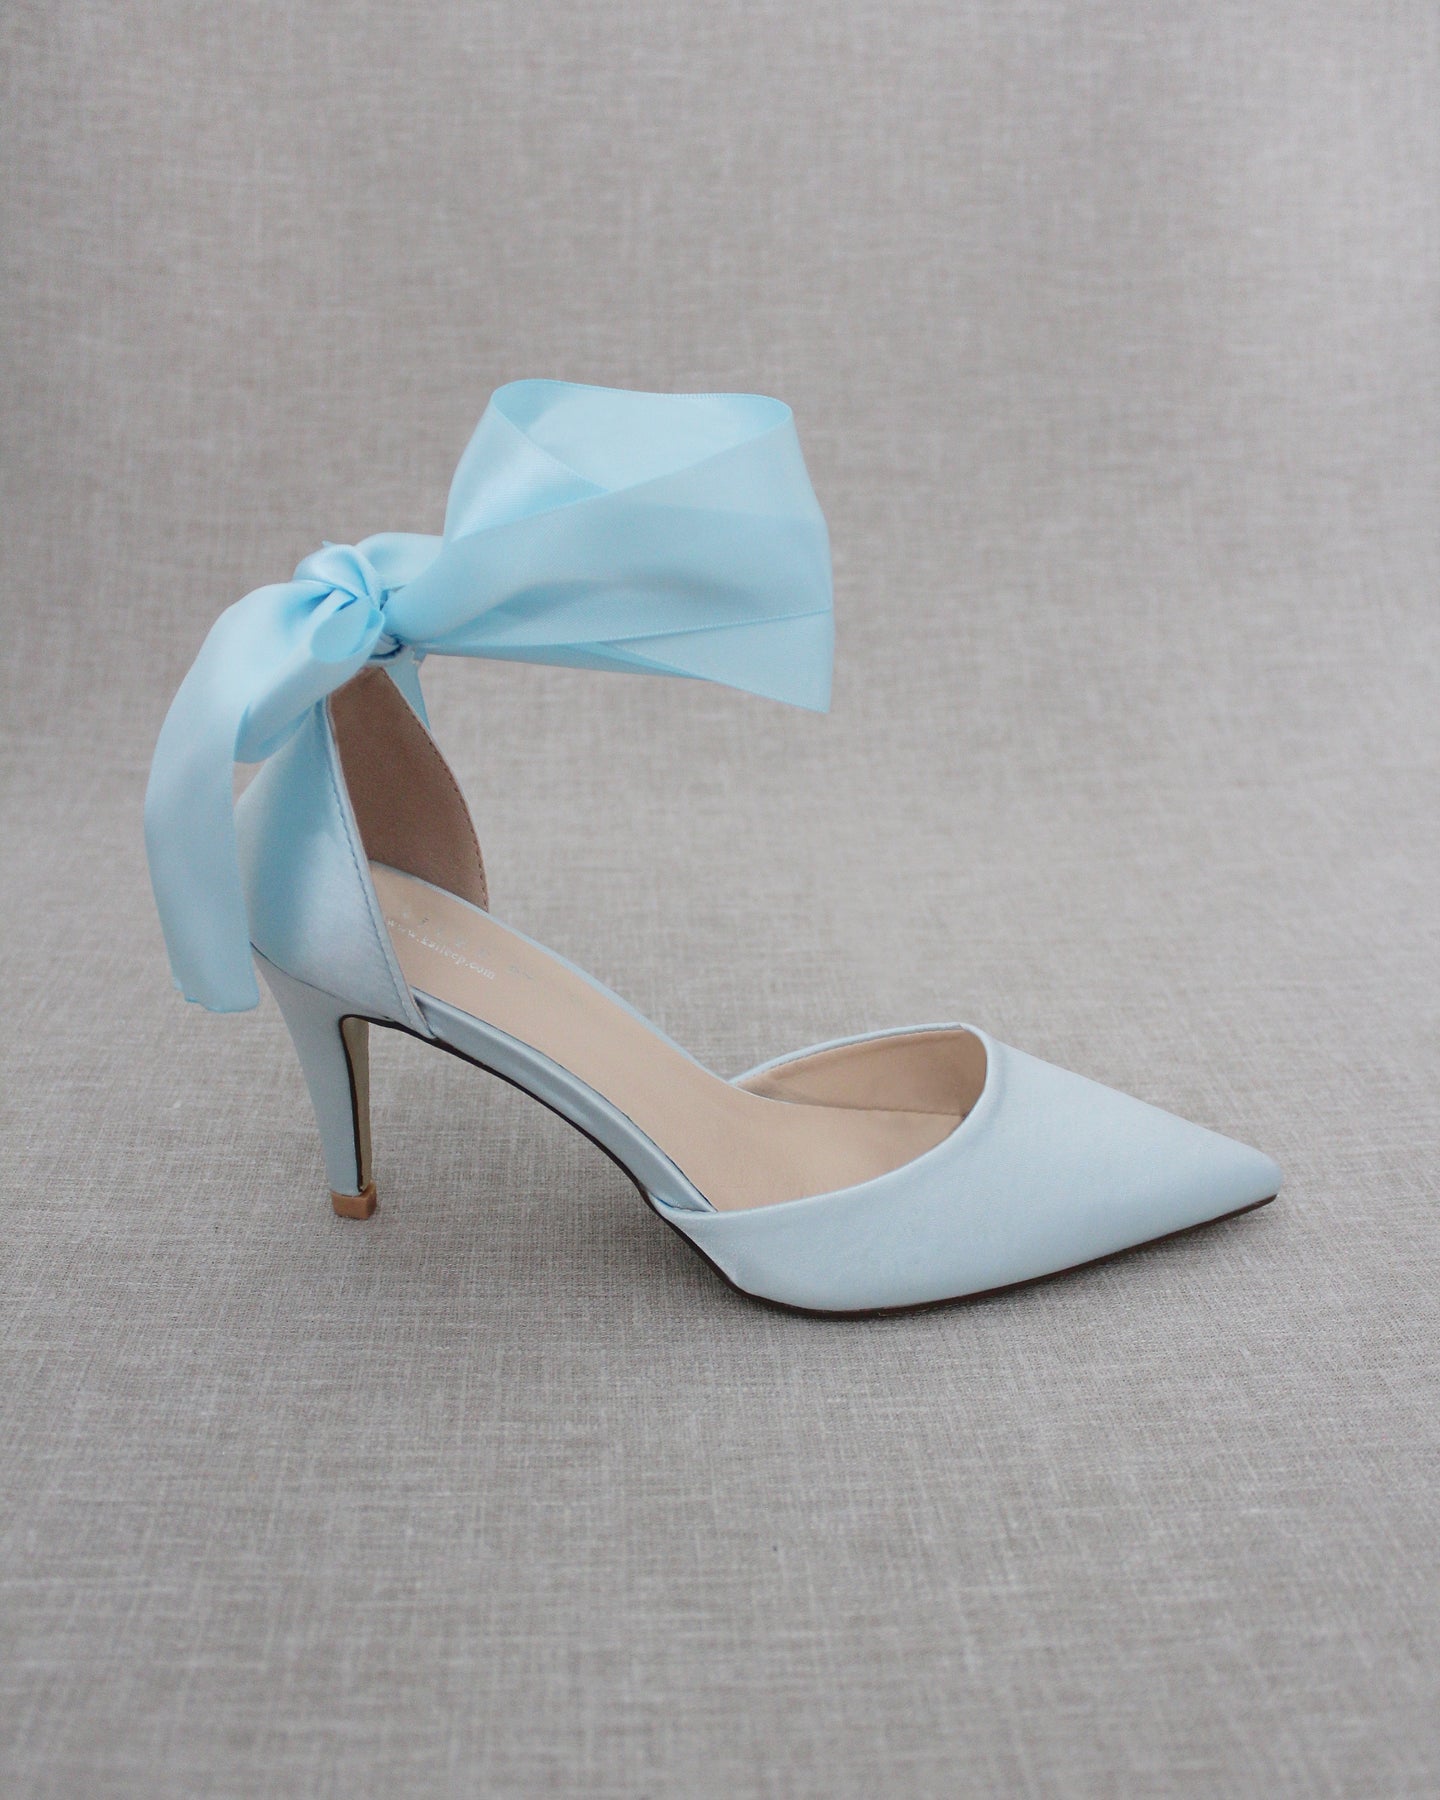 15 Beautiful Something Blue Wedding Shoes! | Blue wedding shoes, Light blue  wedding shoes, Something blue wedding